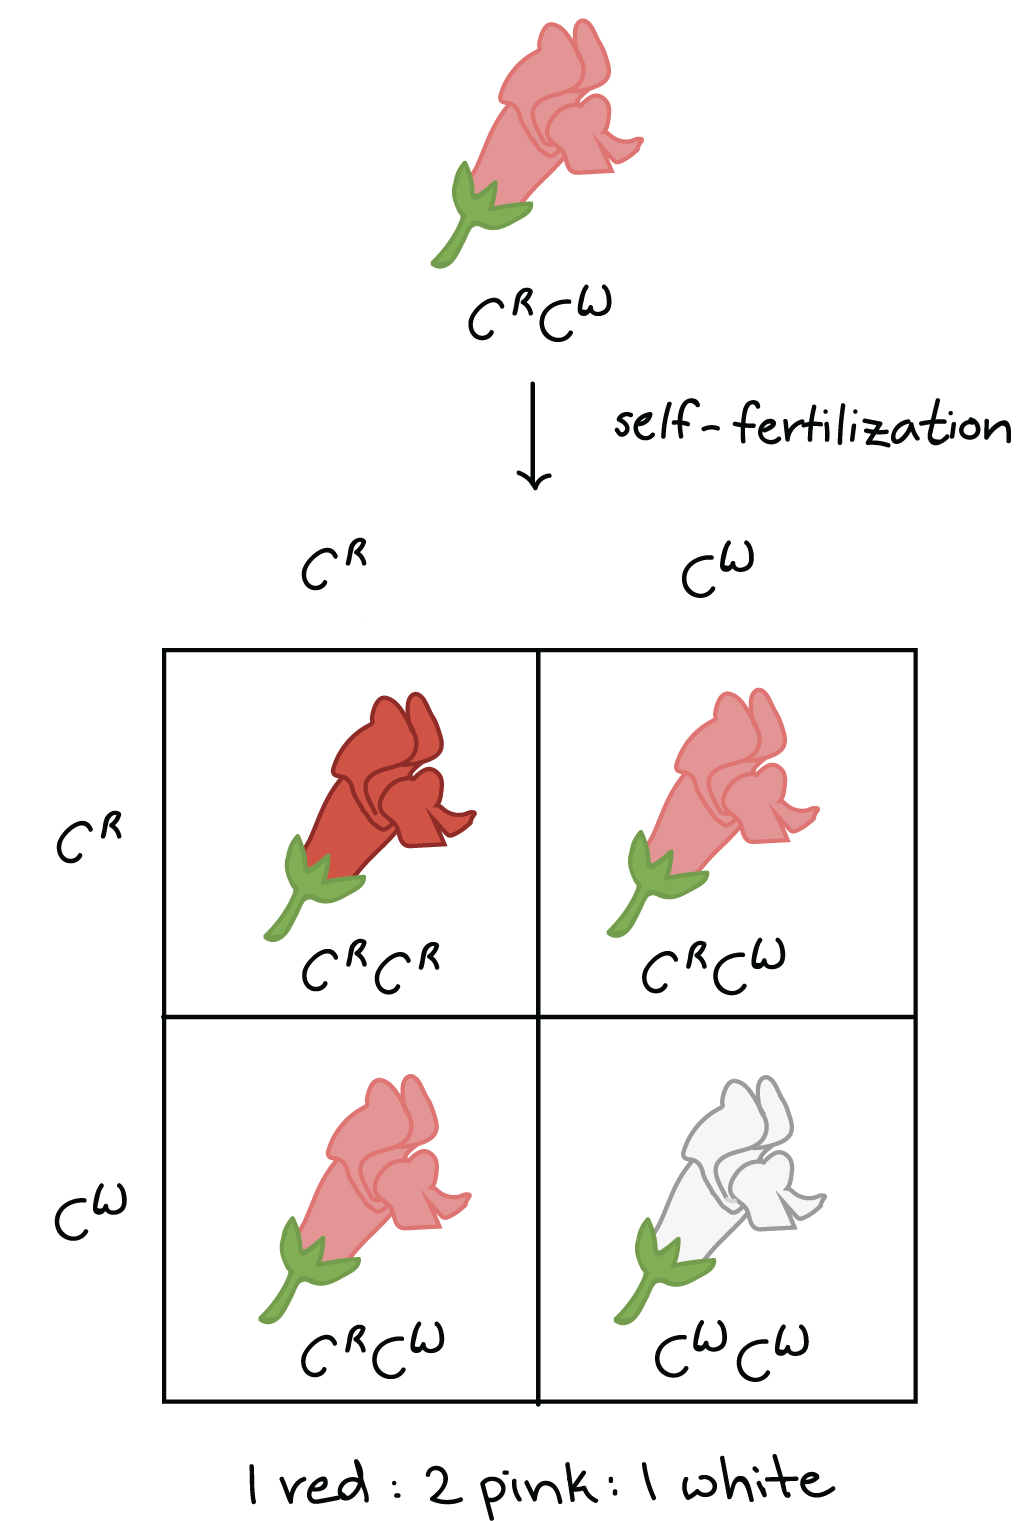 La autofertilización de plantas rosadas $C^RC^W$ produce crías rojas, rosadas y blancas en una proporción de 1:2:1.